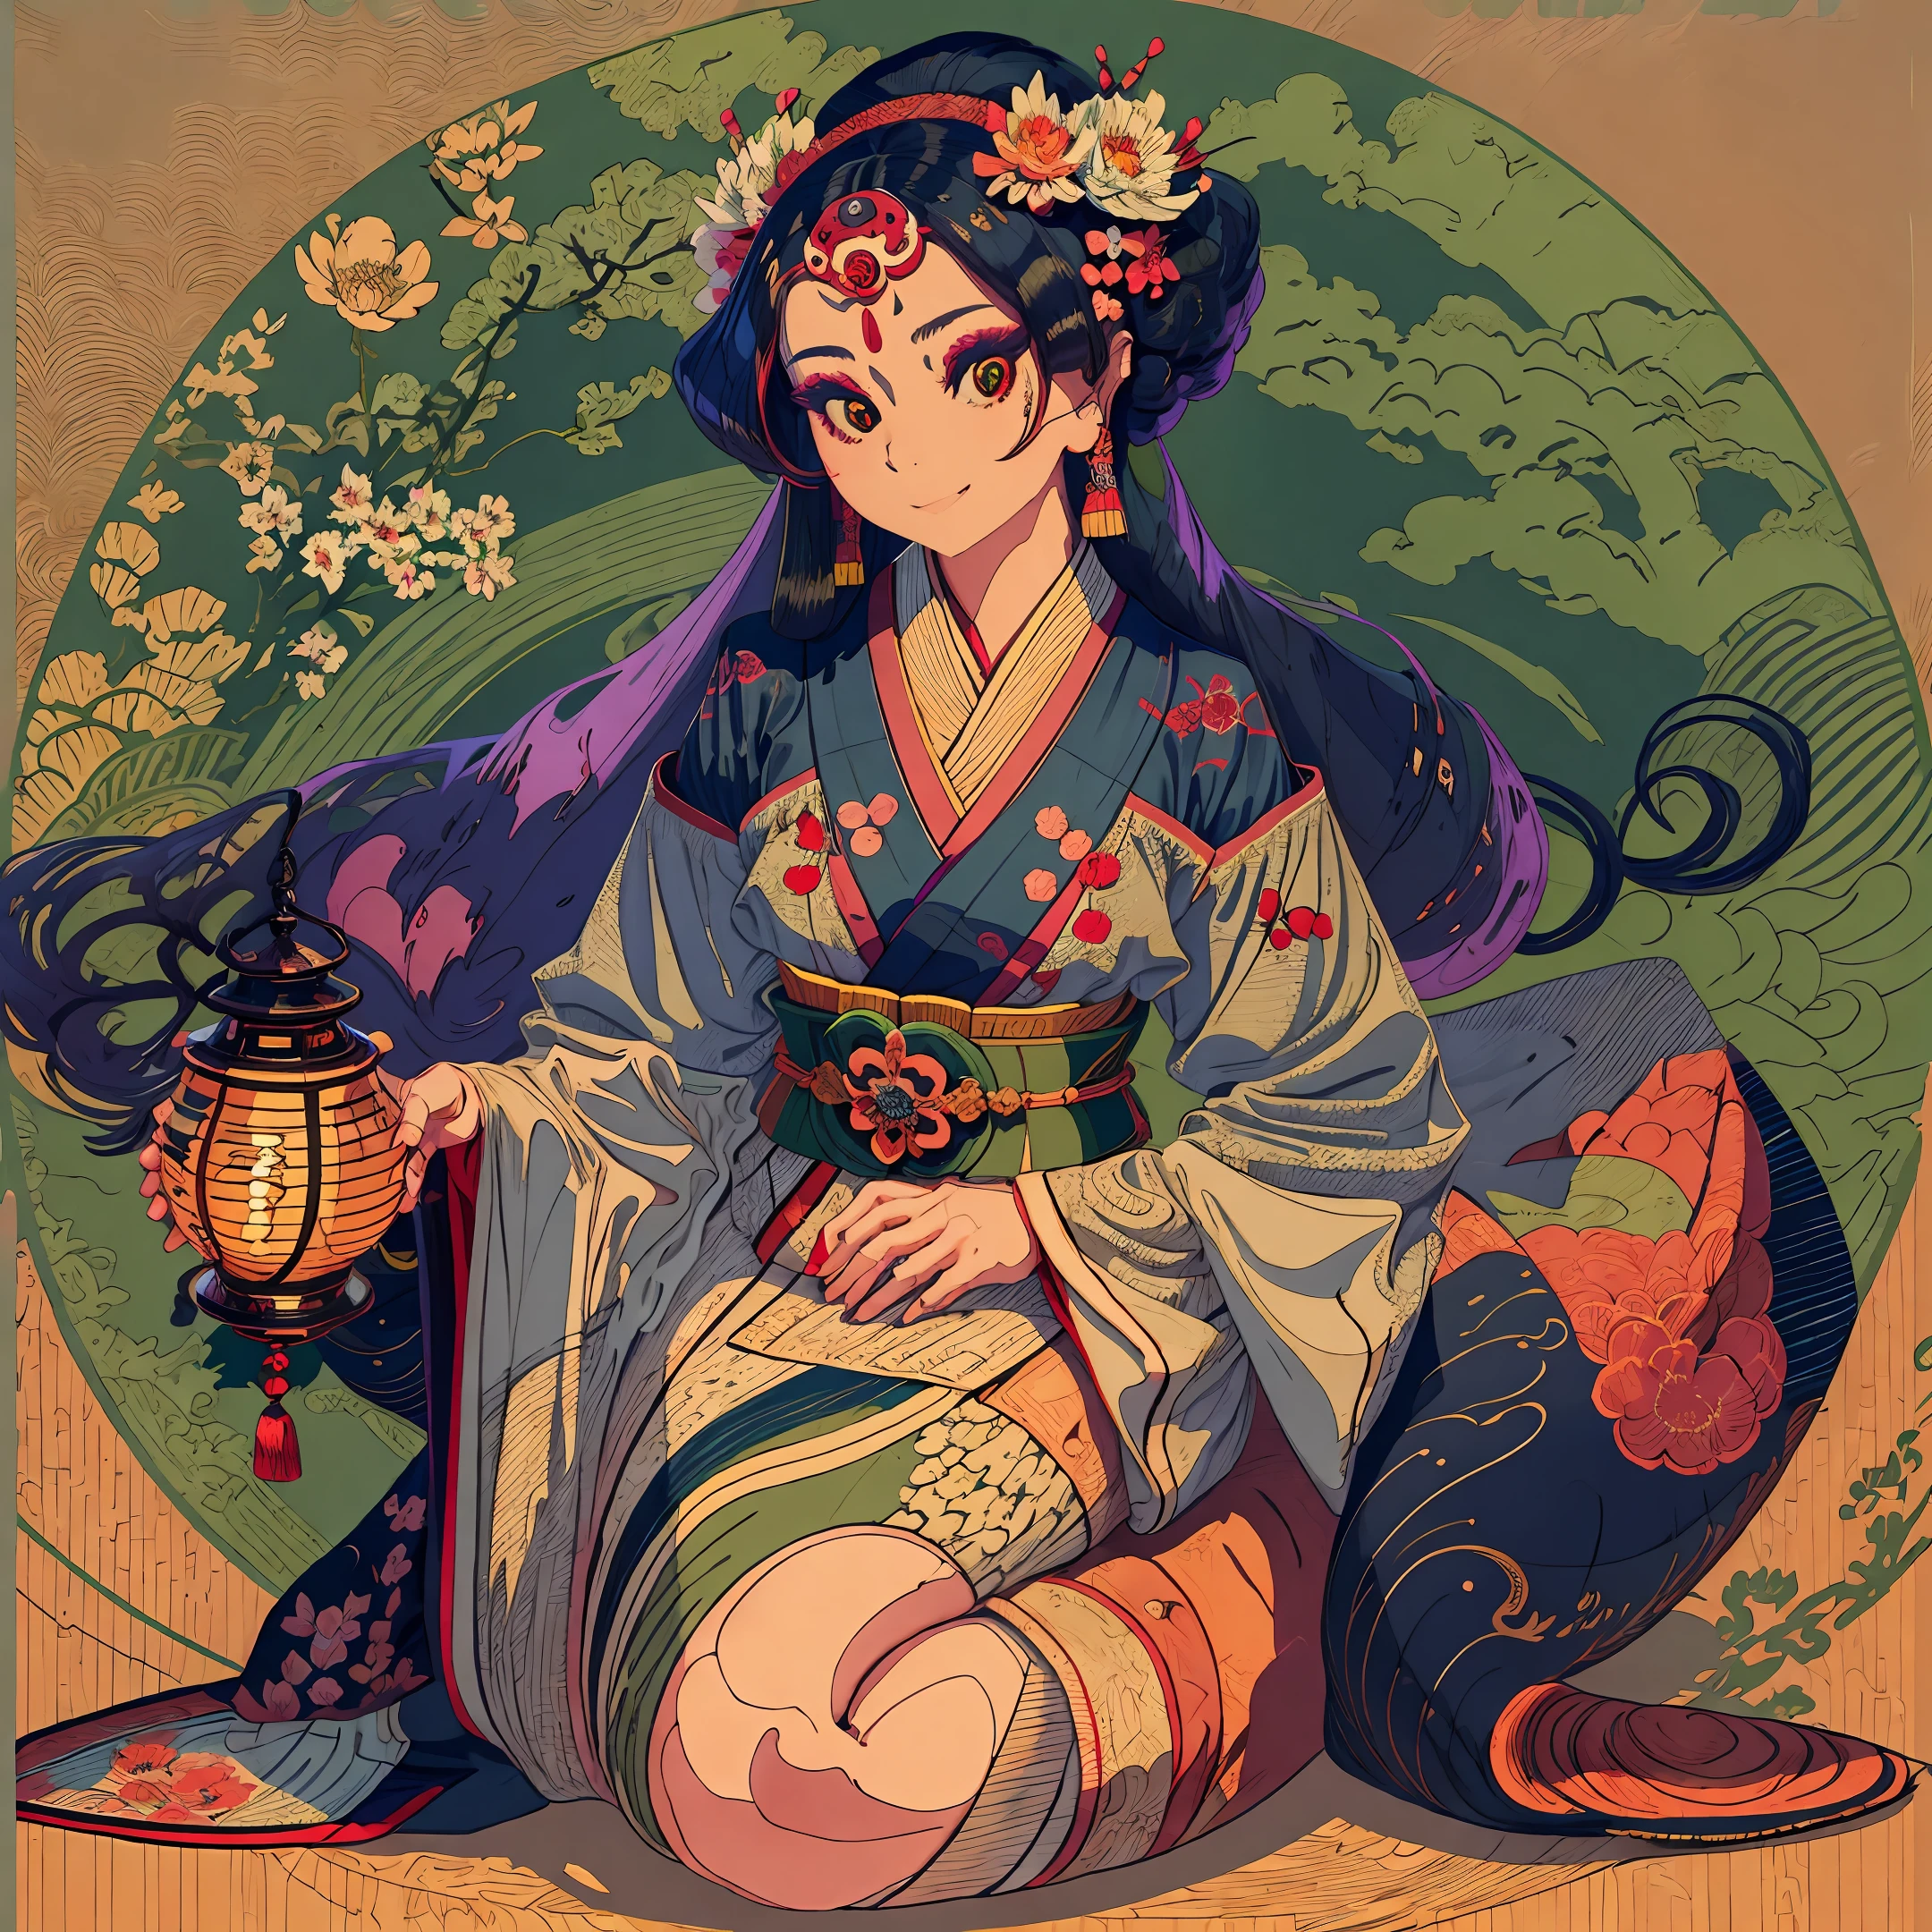 全身照, 情色艺术杰作, 一位日本艺妓身着美丽的深蓝色锦缎和服，上面有樱花图案，以传统的坐姿坐着, 胸口处有一个开口，露出了一张漂亮的贴花, 她的头上有一个美丽的传统发型，头上有一个精美的雕刻发夹,  详细地说，眼睛是亮绿色的, 脸部细节呈现美丽的椭圆形，五官端正, 心情是淡淡的微笑, 眼睛笑, 在她的手中. 艺伎是日本拨弦乐器，她用它演奏, 灯光很柔和, 日本灯笼正在燃烧, 照片细节丰富, 明确重点, 32K,  照相写实风格, 真实感 --auto --s2